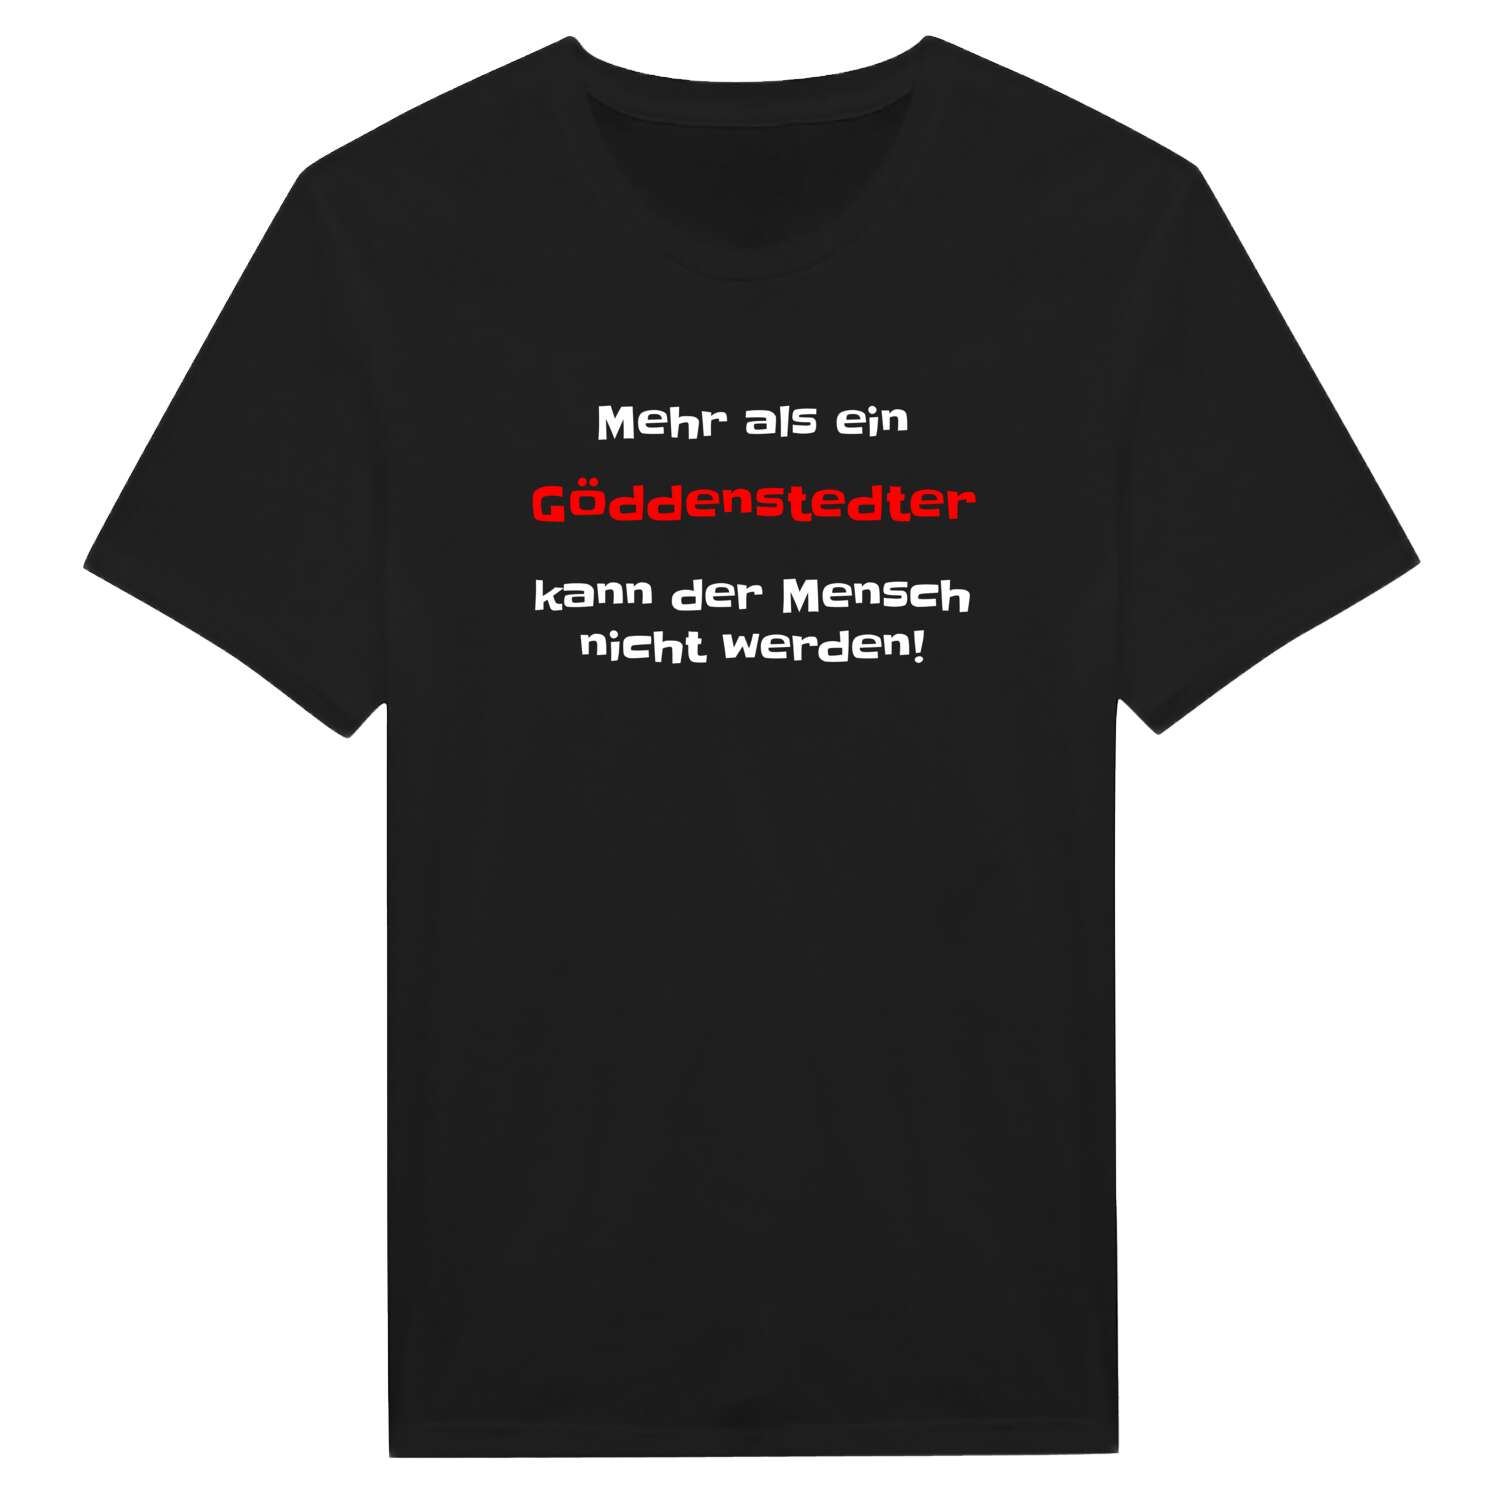 Göddenstedt T-Shirt »Mehr als ein«